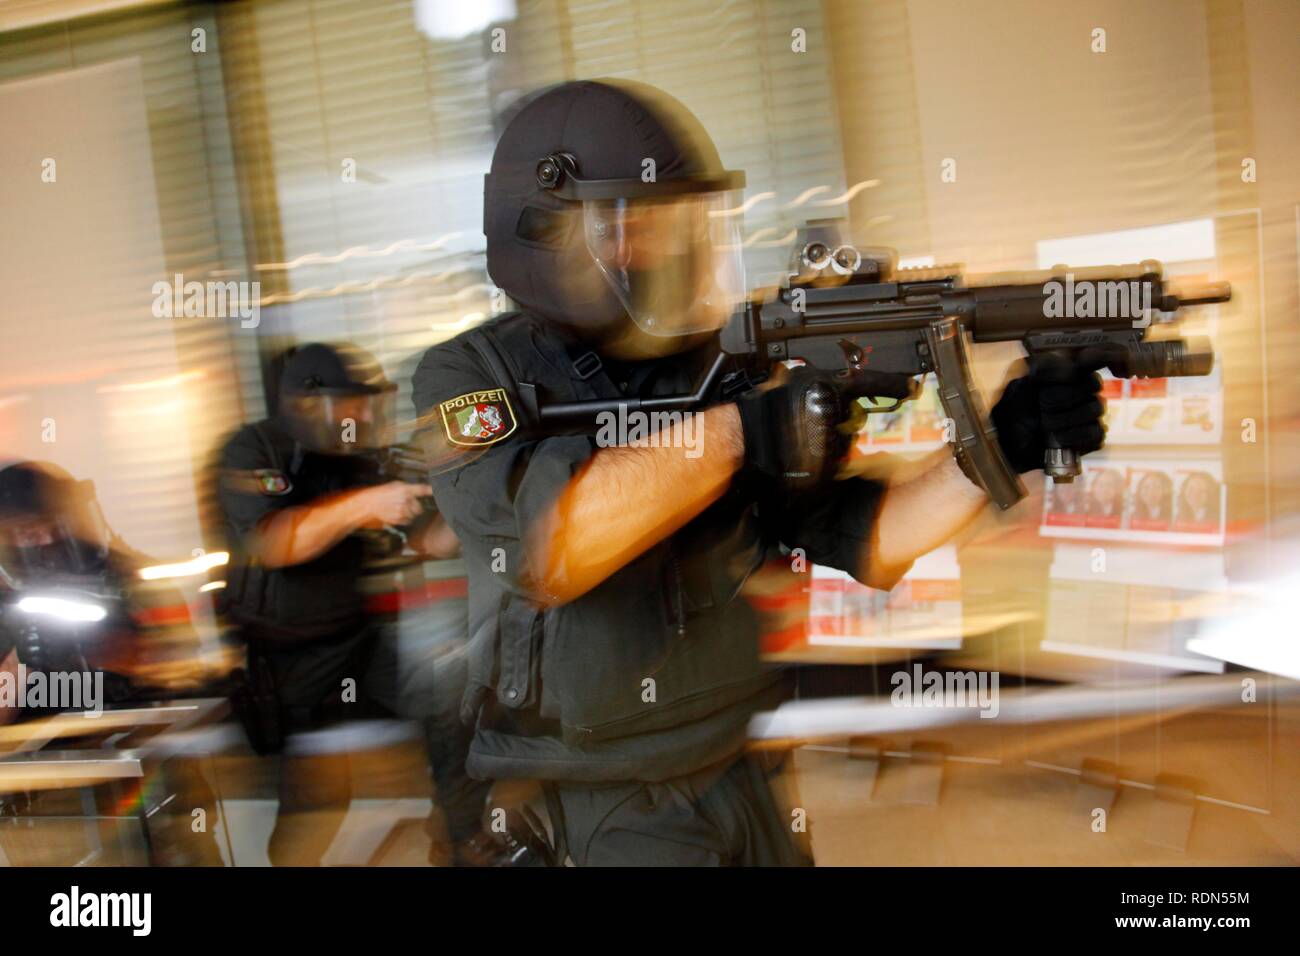 Ensayo de funcionamiento, oficiales de la spezialeinsatzkommando, SEK, una unidad especial de respuesta de la fuerza policial del Estado alemán, Foto de stock